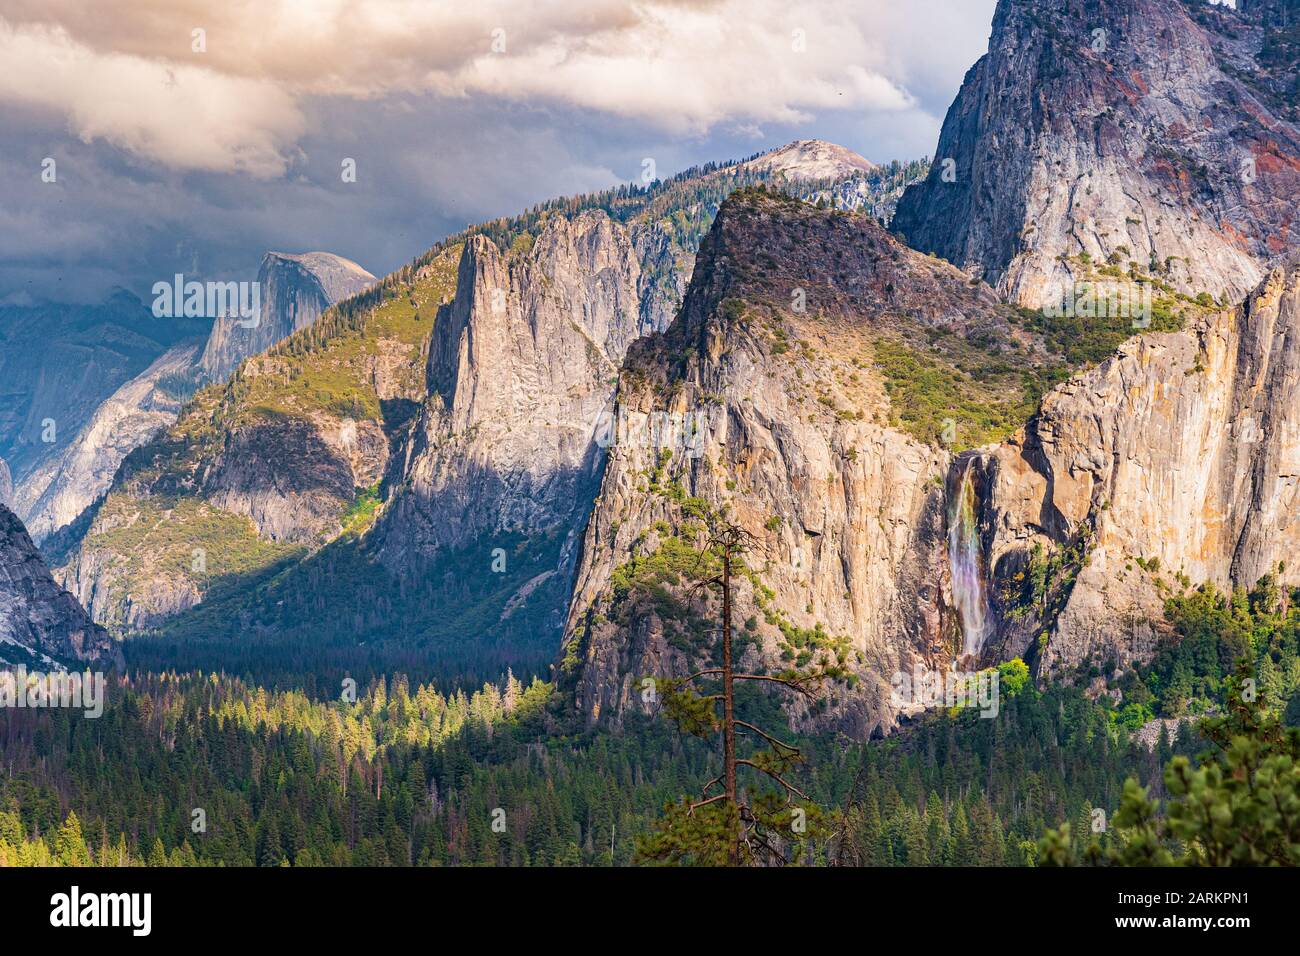 Arcobaleno sopra la Caduta di Bridalveil nel parco nazionale di Yosemite, California. Presenta inoltre Cathedral Rocks, Half Dome e Cloud Rest coperti da nuvole. Foto Stock